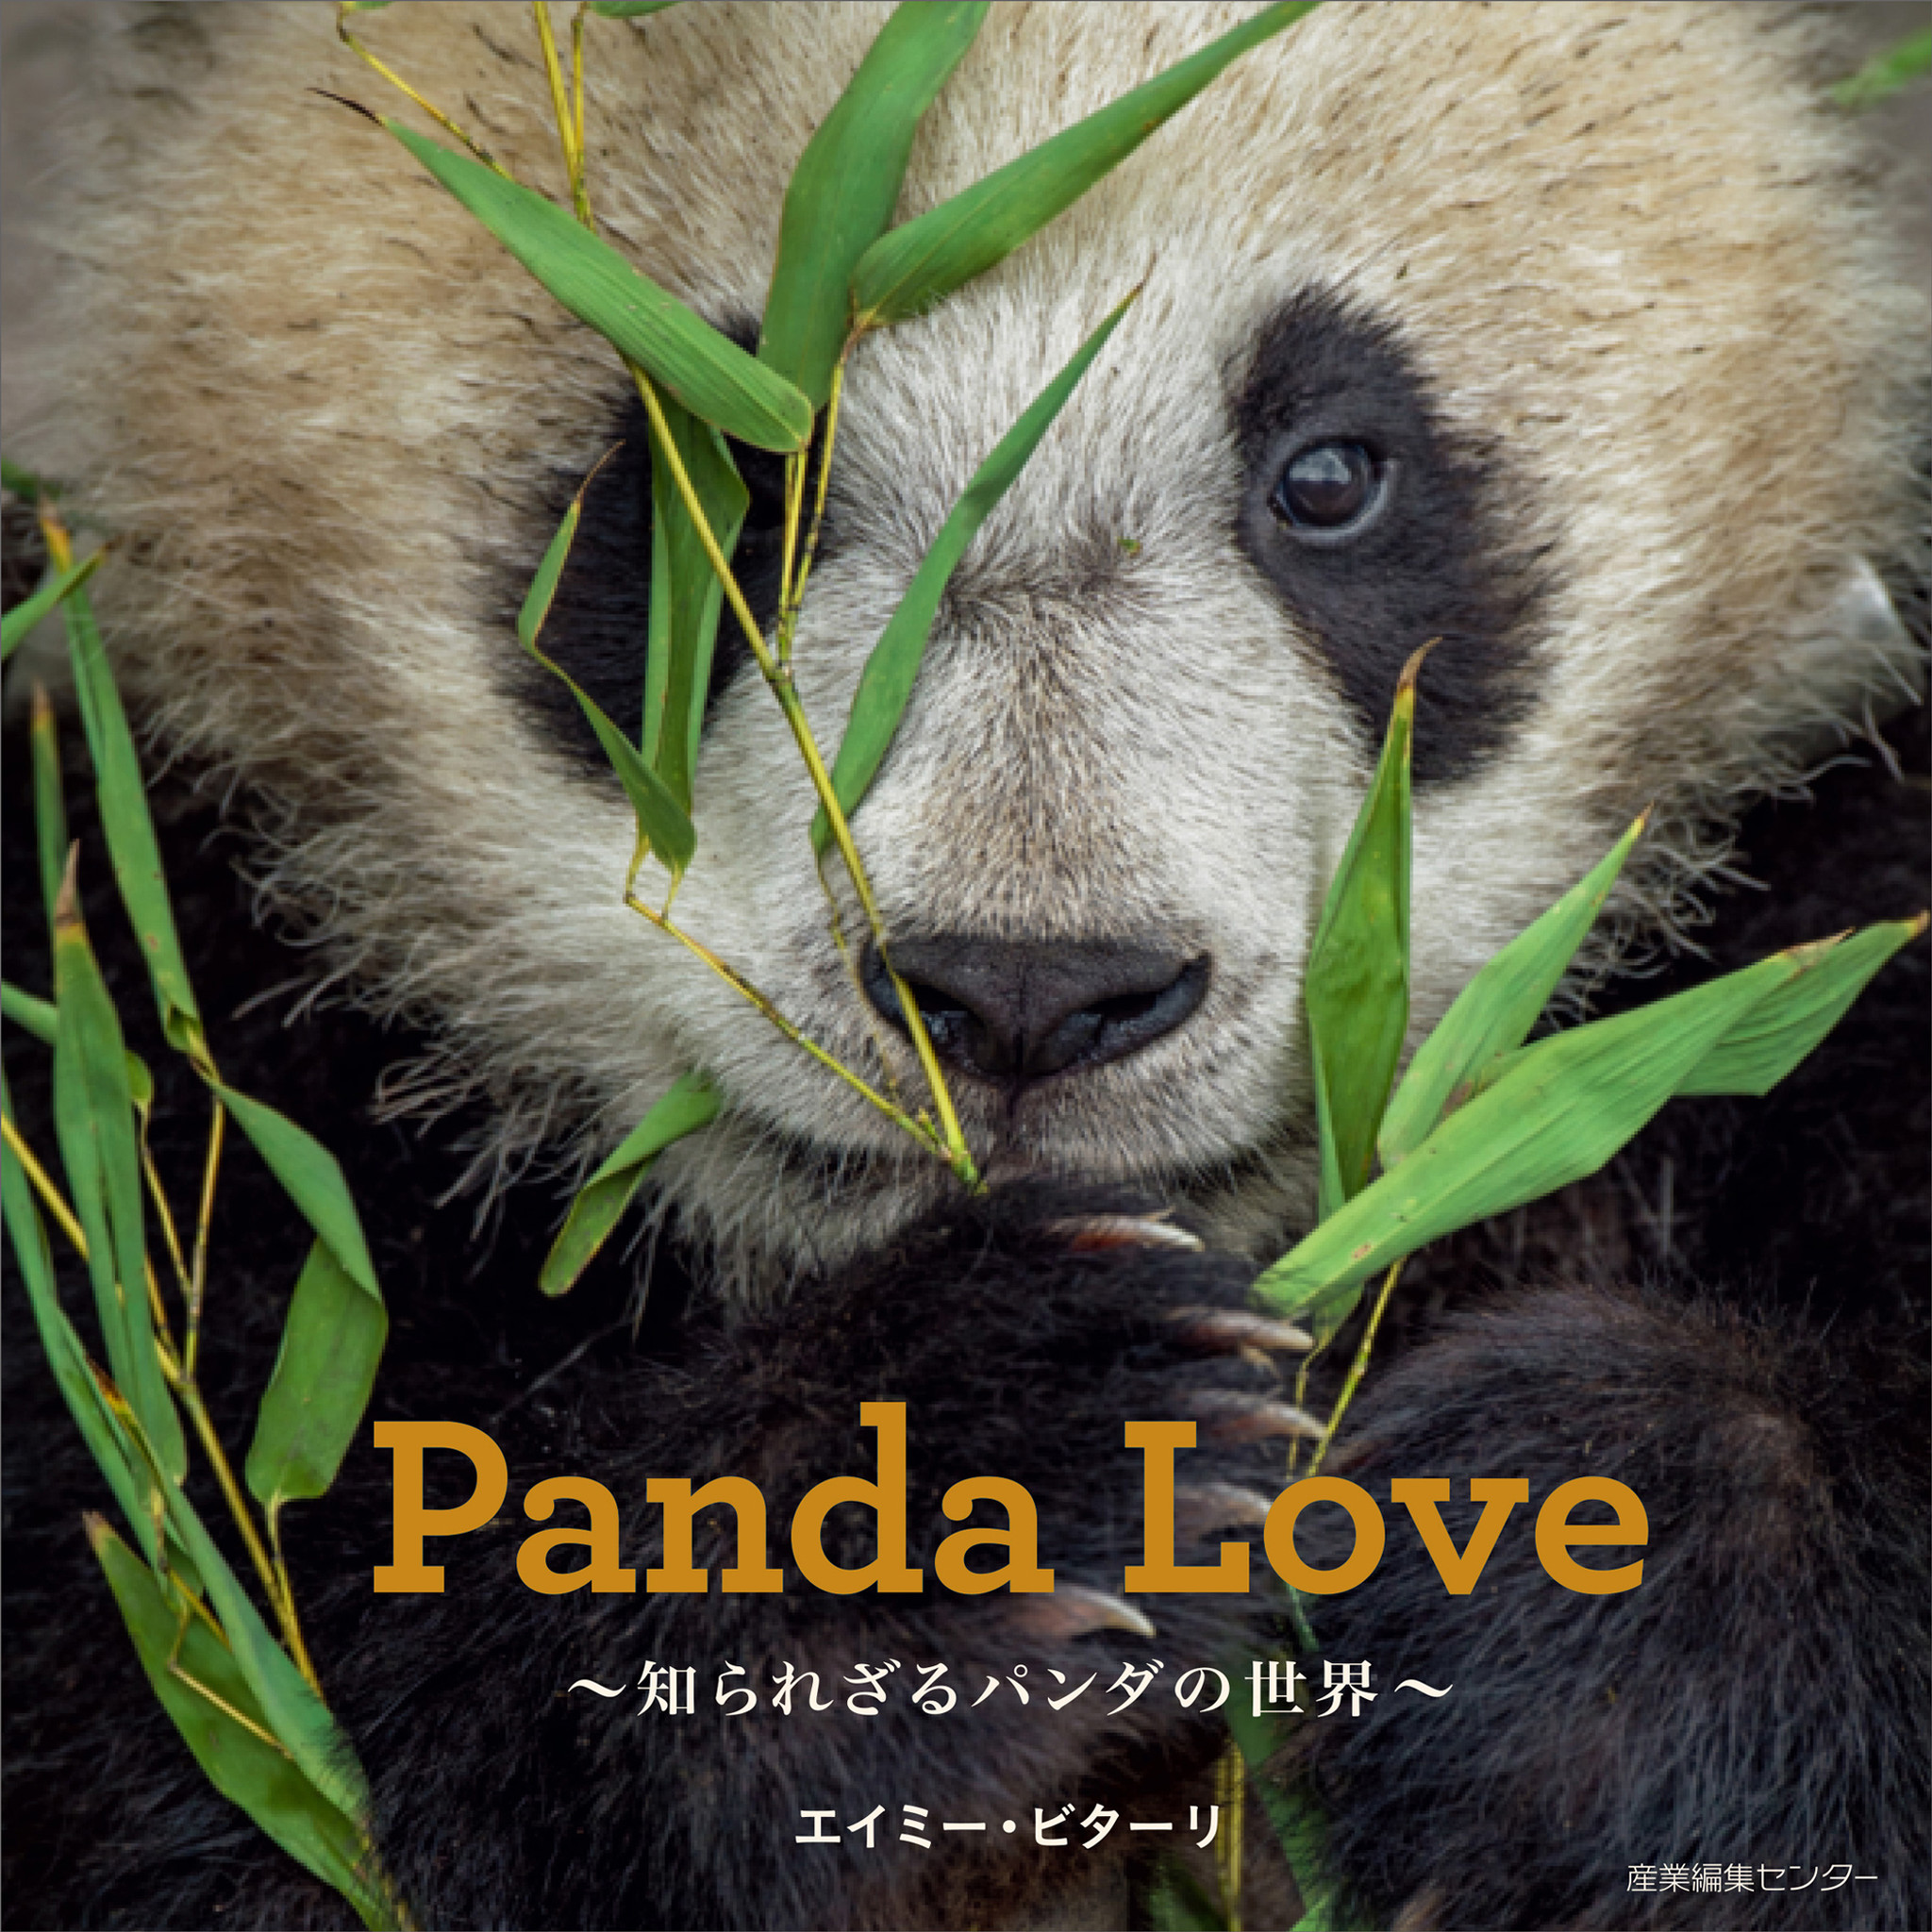 可愛いだけじゃない 野生動物としてのパンダに迫る写真集 Panda Love 知られざるパンダの世界 発売 株式会社産業編集センターのプレスリリース